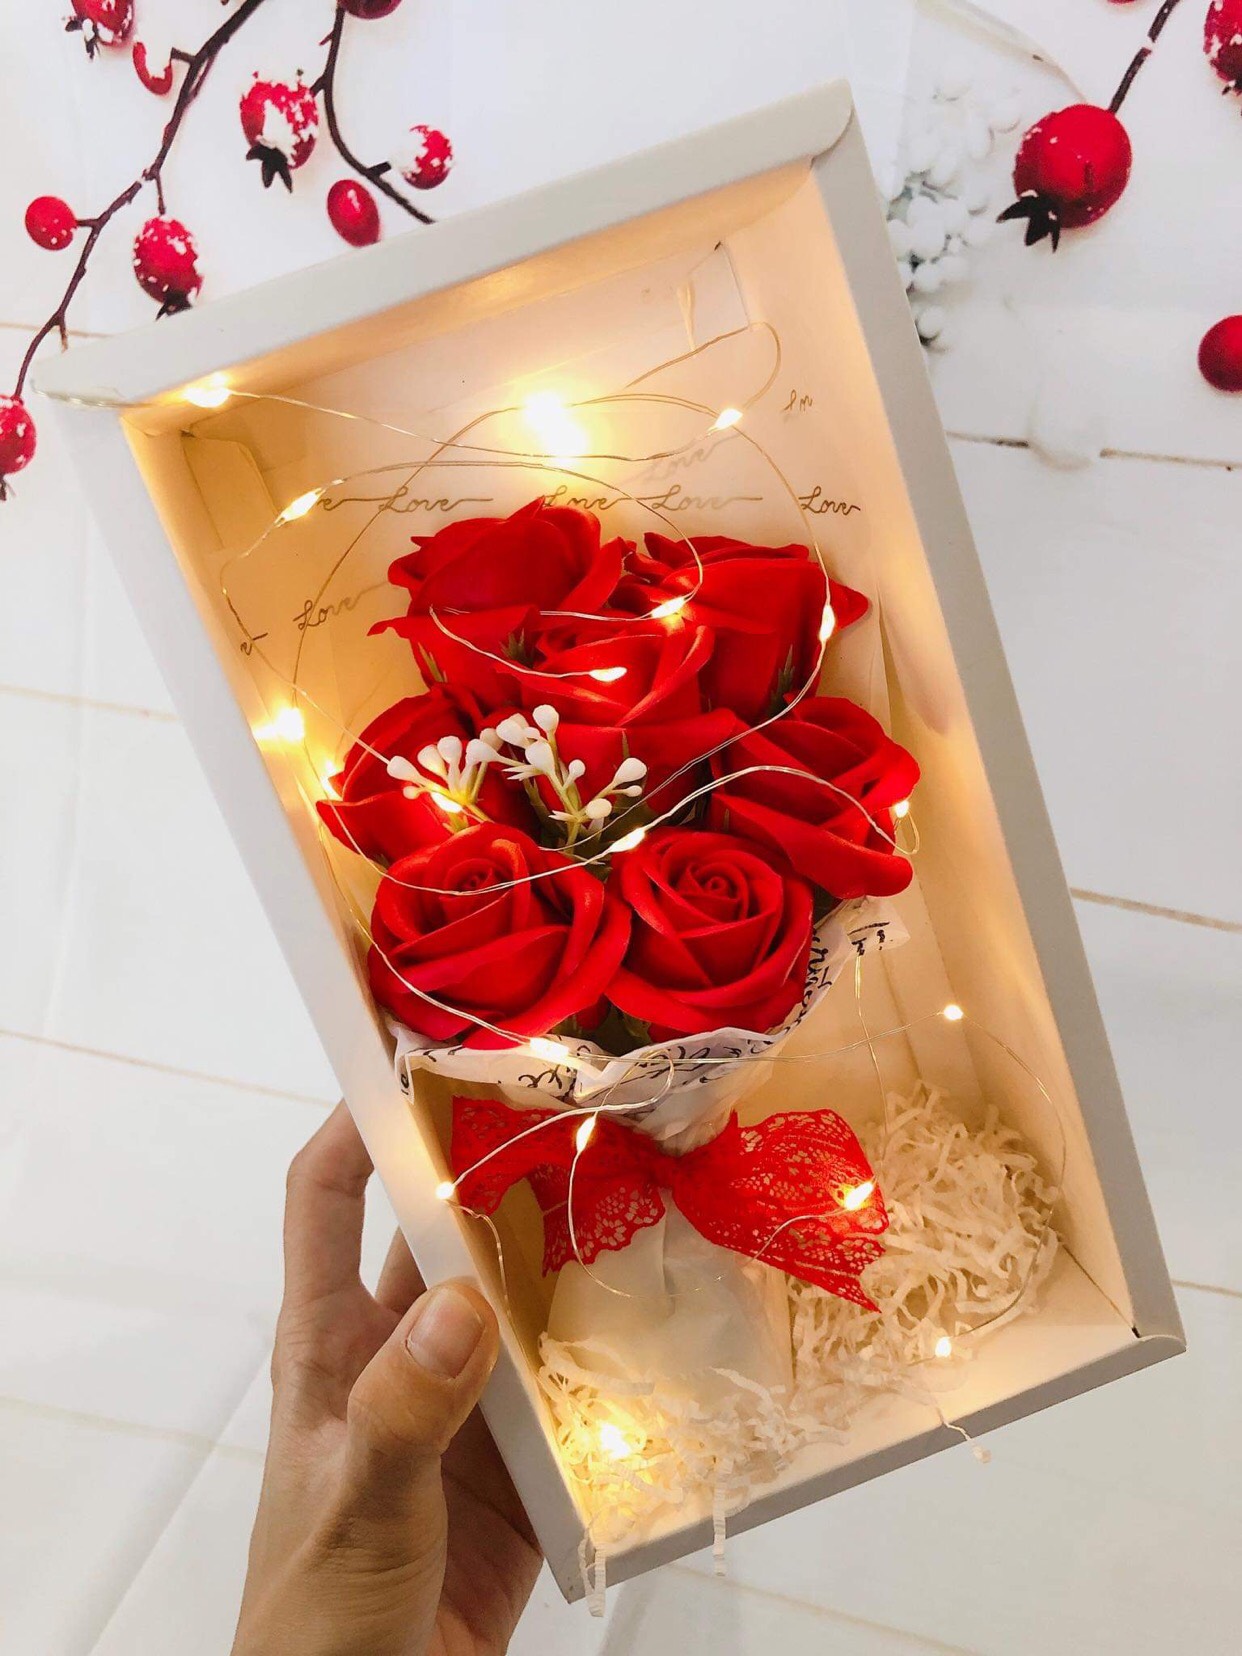 Hoa hồng sáp là một sản phẩm thú vị và độc đáo để tặng cho người thân yêu. Những bông hoa được làm từ sáp trông rất đẹp mắt và thơm ngát. Bạn sẽ chắc chắn khiến người nhận cảm thấy hạnh phúc và đặc biệt khi tặng hoa hồng sáp như một món quà đầy ý nghĩa.